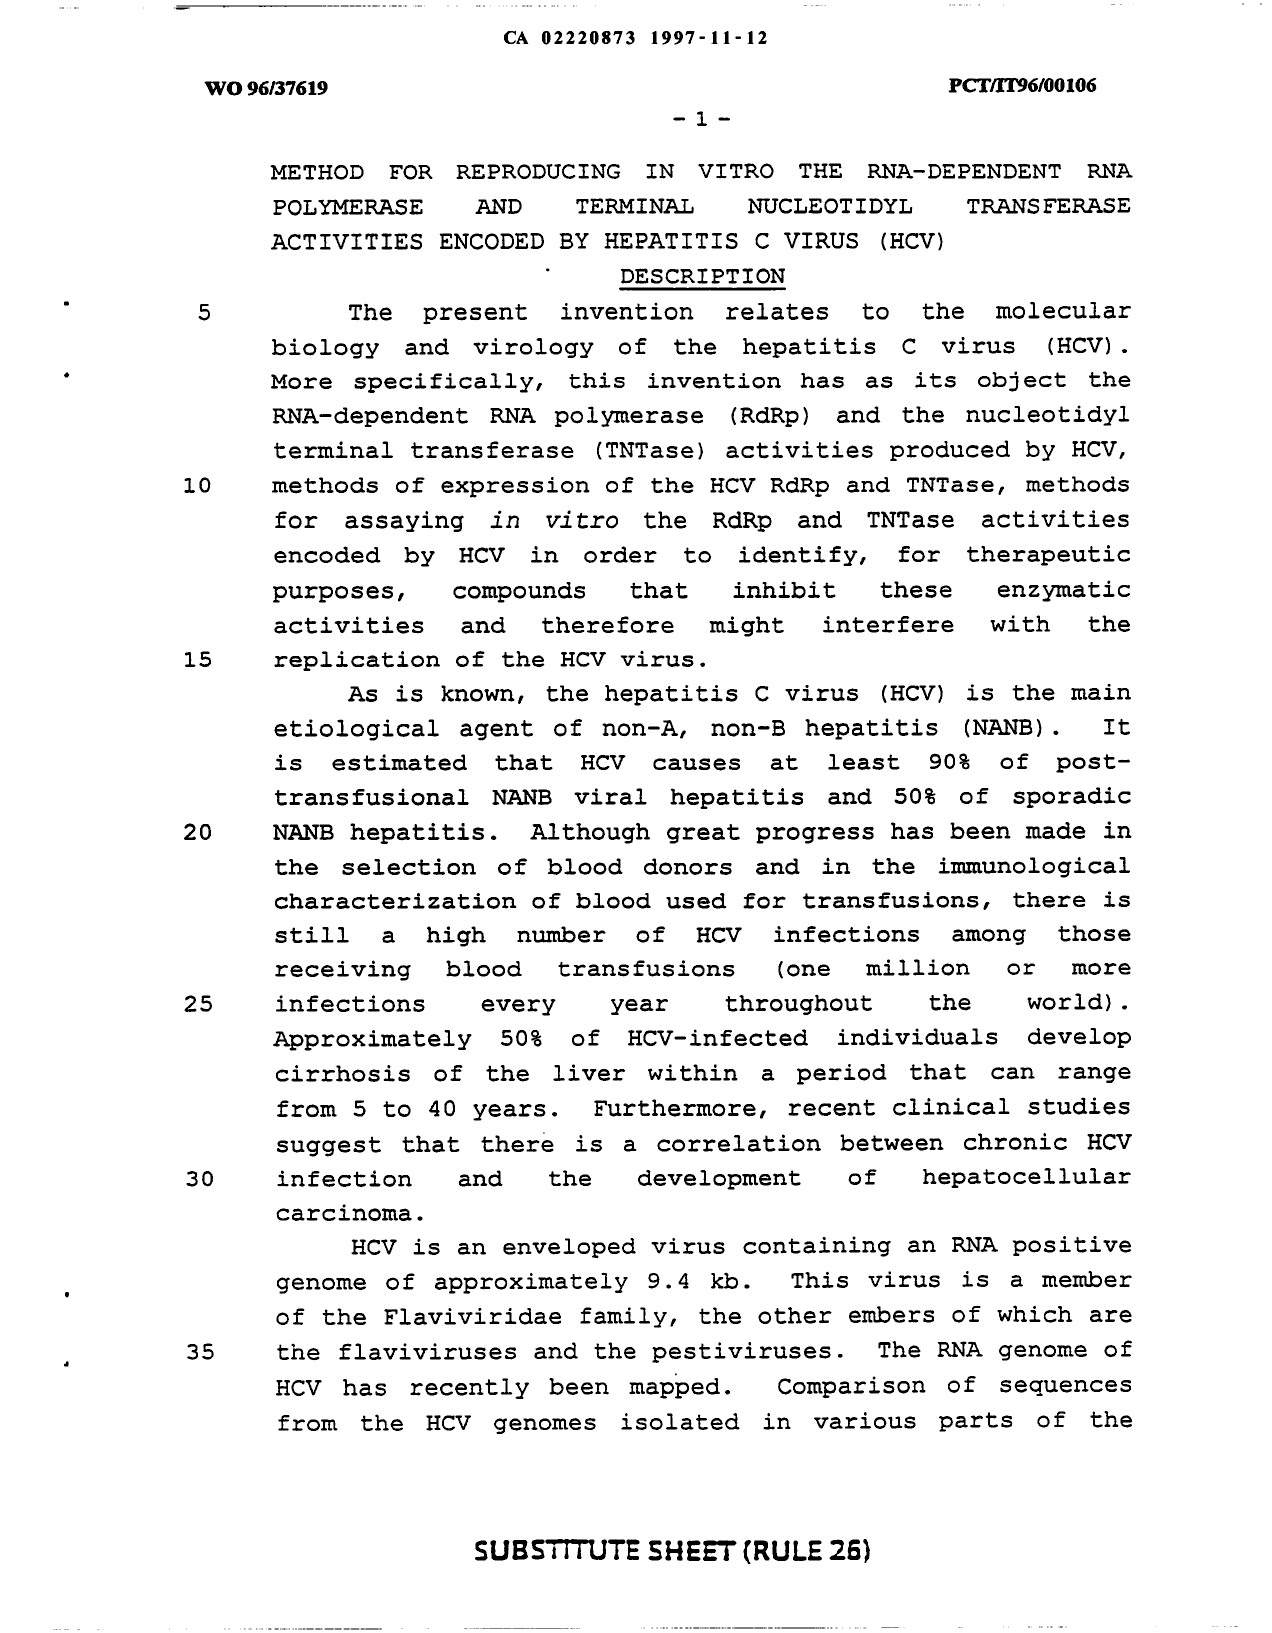 Canadian Patent Document 2220873. Description 19991015. Image 1 of 41